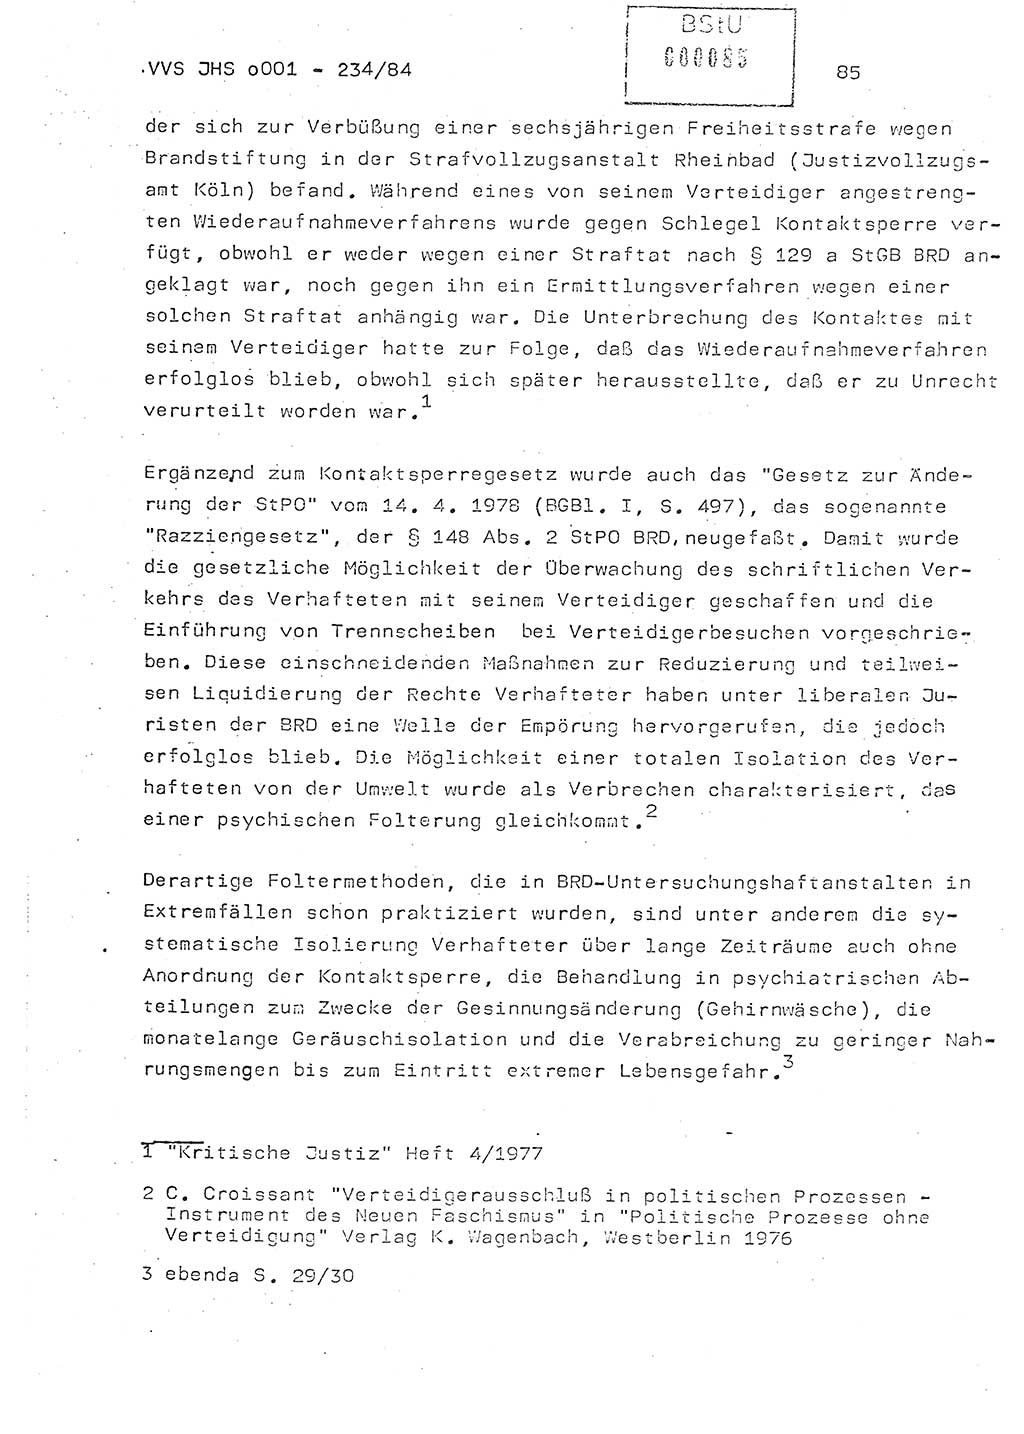 Dissertation Oberst Siegfried Rataizick (Abt. ⅩⅣ), Oberstleutnant Volkmar Heinz (Abt. ⅩⅣ), Oberstleutnant Werner Stein (HA Ⅸ), Hauptmann Heinz Conrad (JHS), Ministerium für Staatssicherheit (MfS) [Deutsche Demokratische Republik (DDR)], Juristische Hochschule (JHS), Vertrauliche Verschlußsache (VVS) o001-234/84, Potsdam 1984, Seite 85 (Diss. MfS DDR JHS VVS o001-234/84 1984, S. 85)